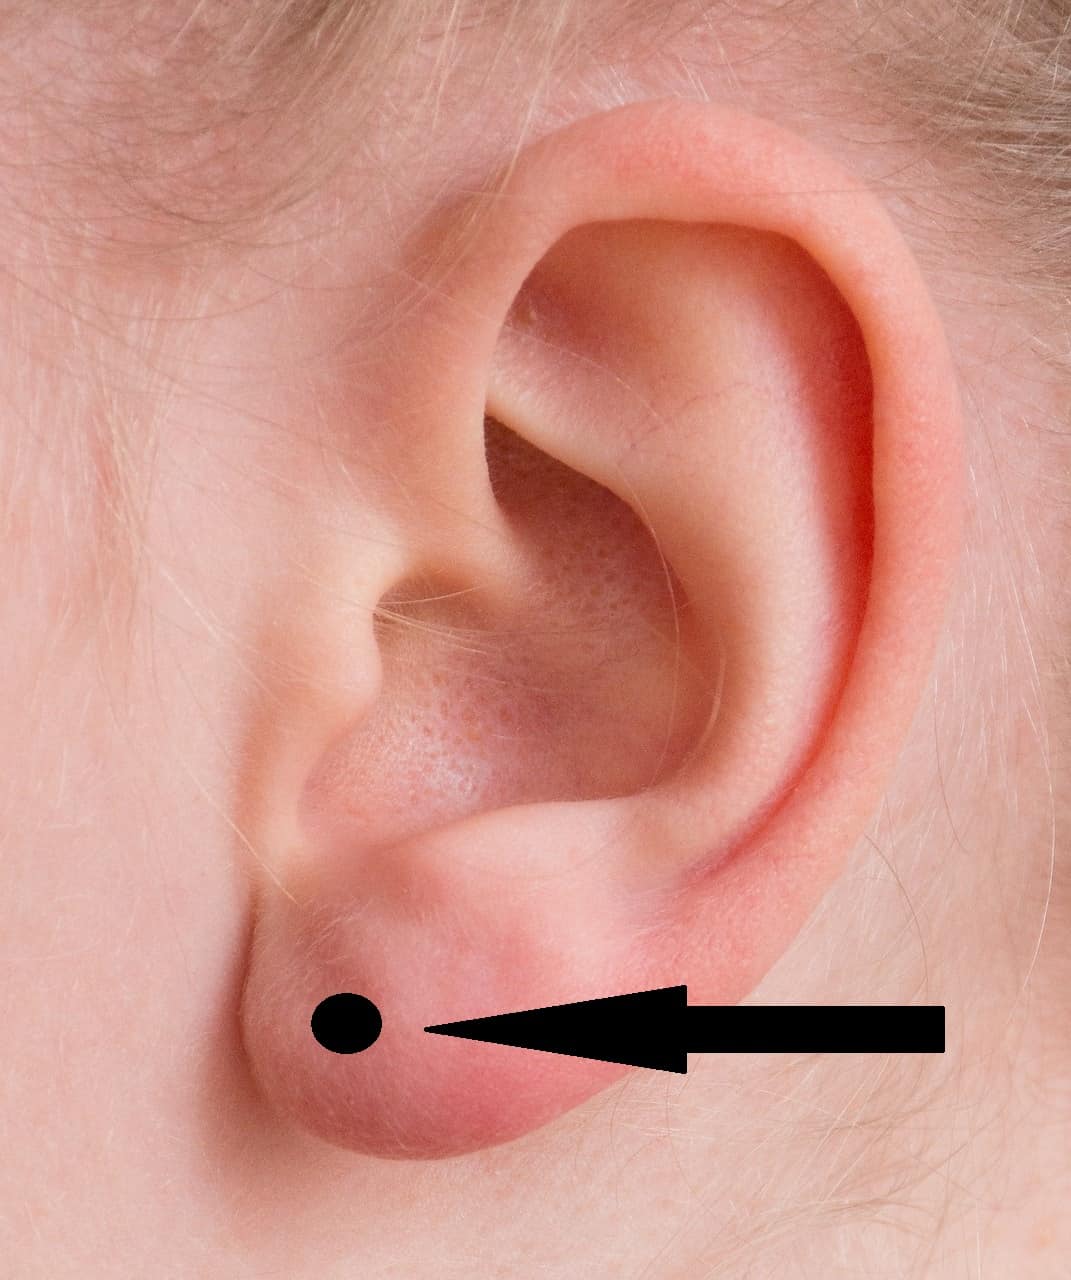 earlobe piercing guide